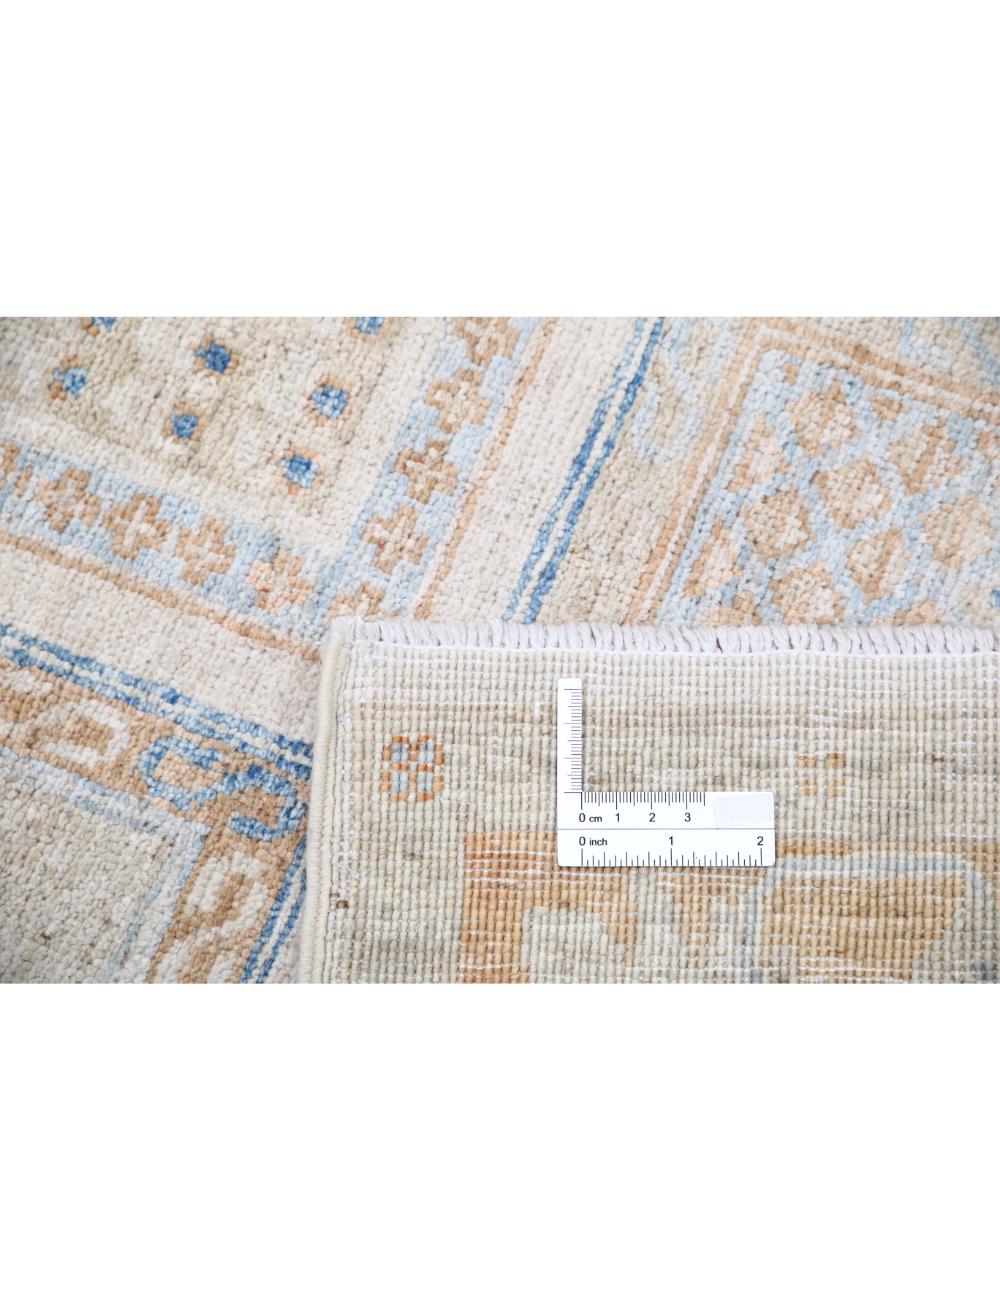 Hand Knotted Bakhtiari Wool Rug - 2'7'' x 9'2'' Arteverk Arteverk Rugs